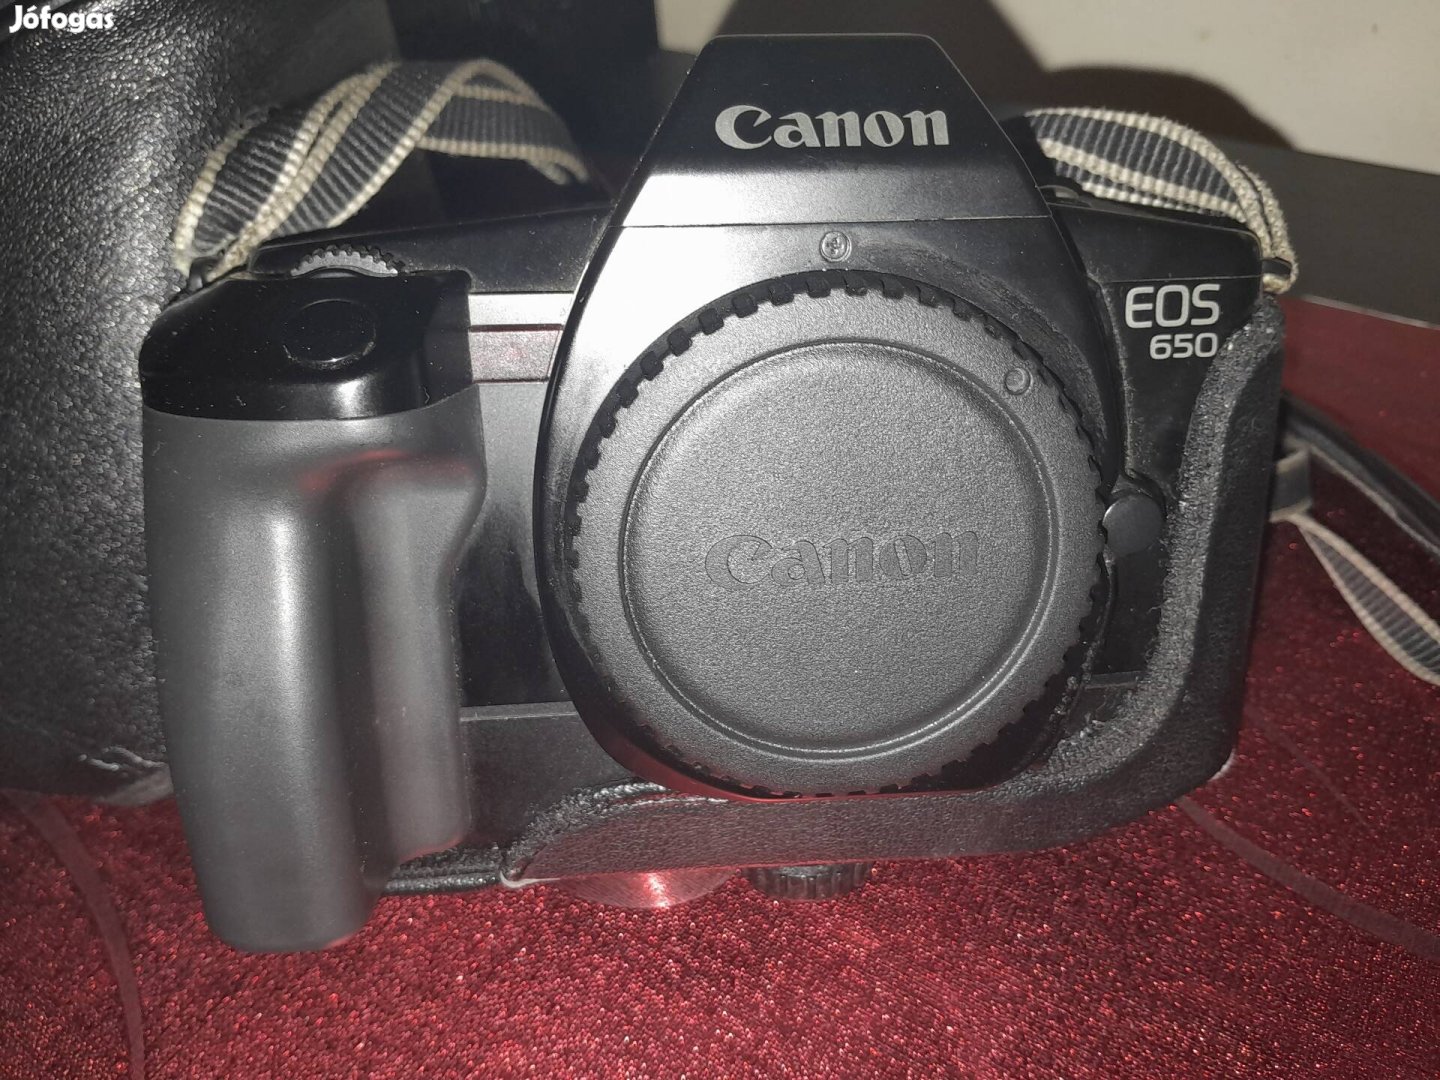 Cannon EOS 650-es fényképezőgép 